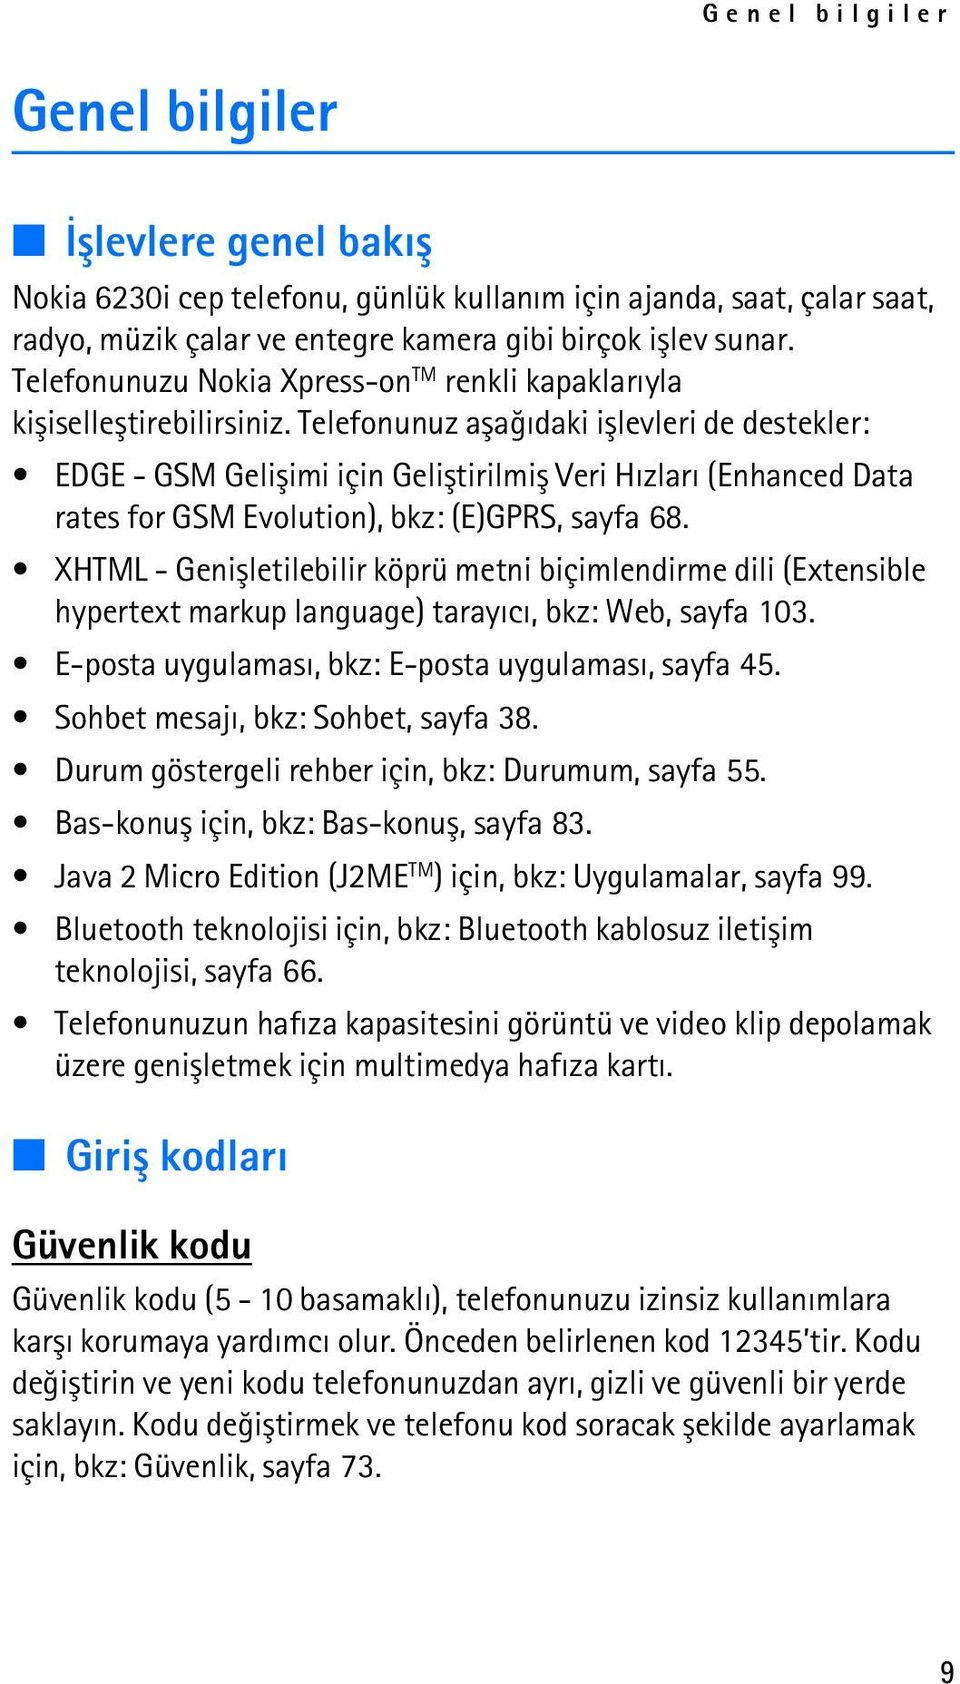 Telefonunuz aþaðýdaki iþlevleri de destekler: EDGE - GSM Geliþimi için Geliþtirilmiþ Veri Hýzlarý (Enhanced Data rates for GSM Evolution), bkz: (E)GPRS, sayfa 68.